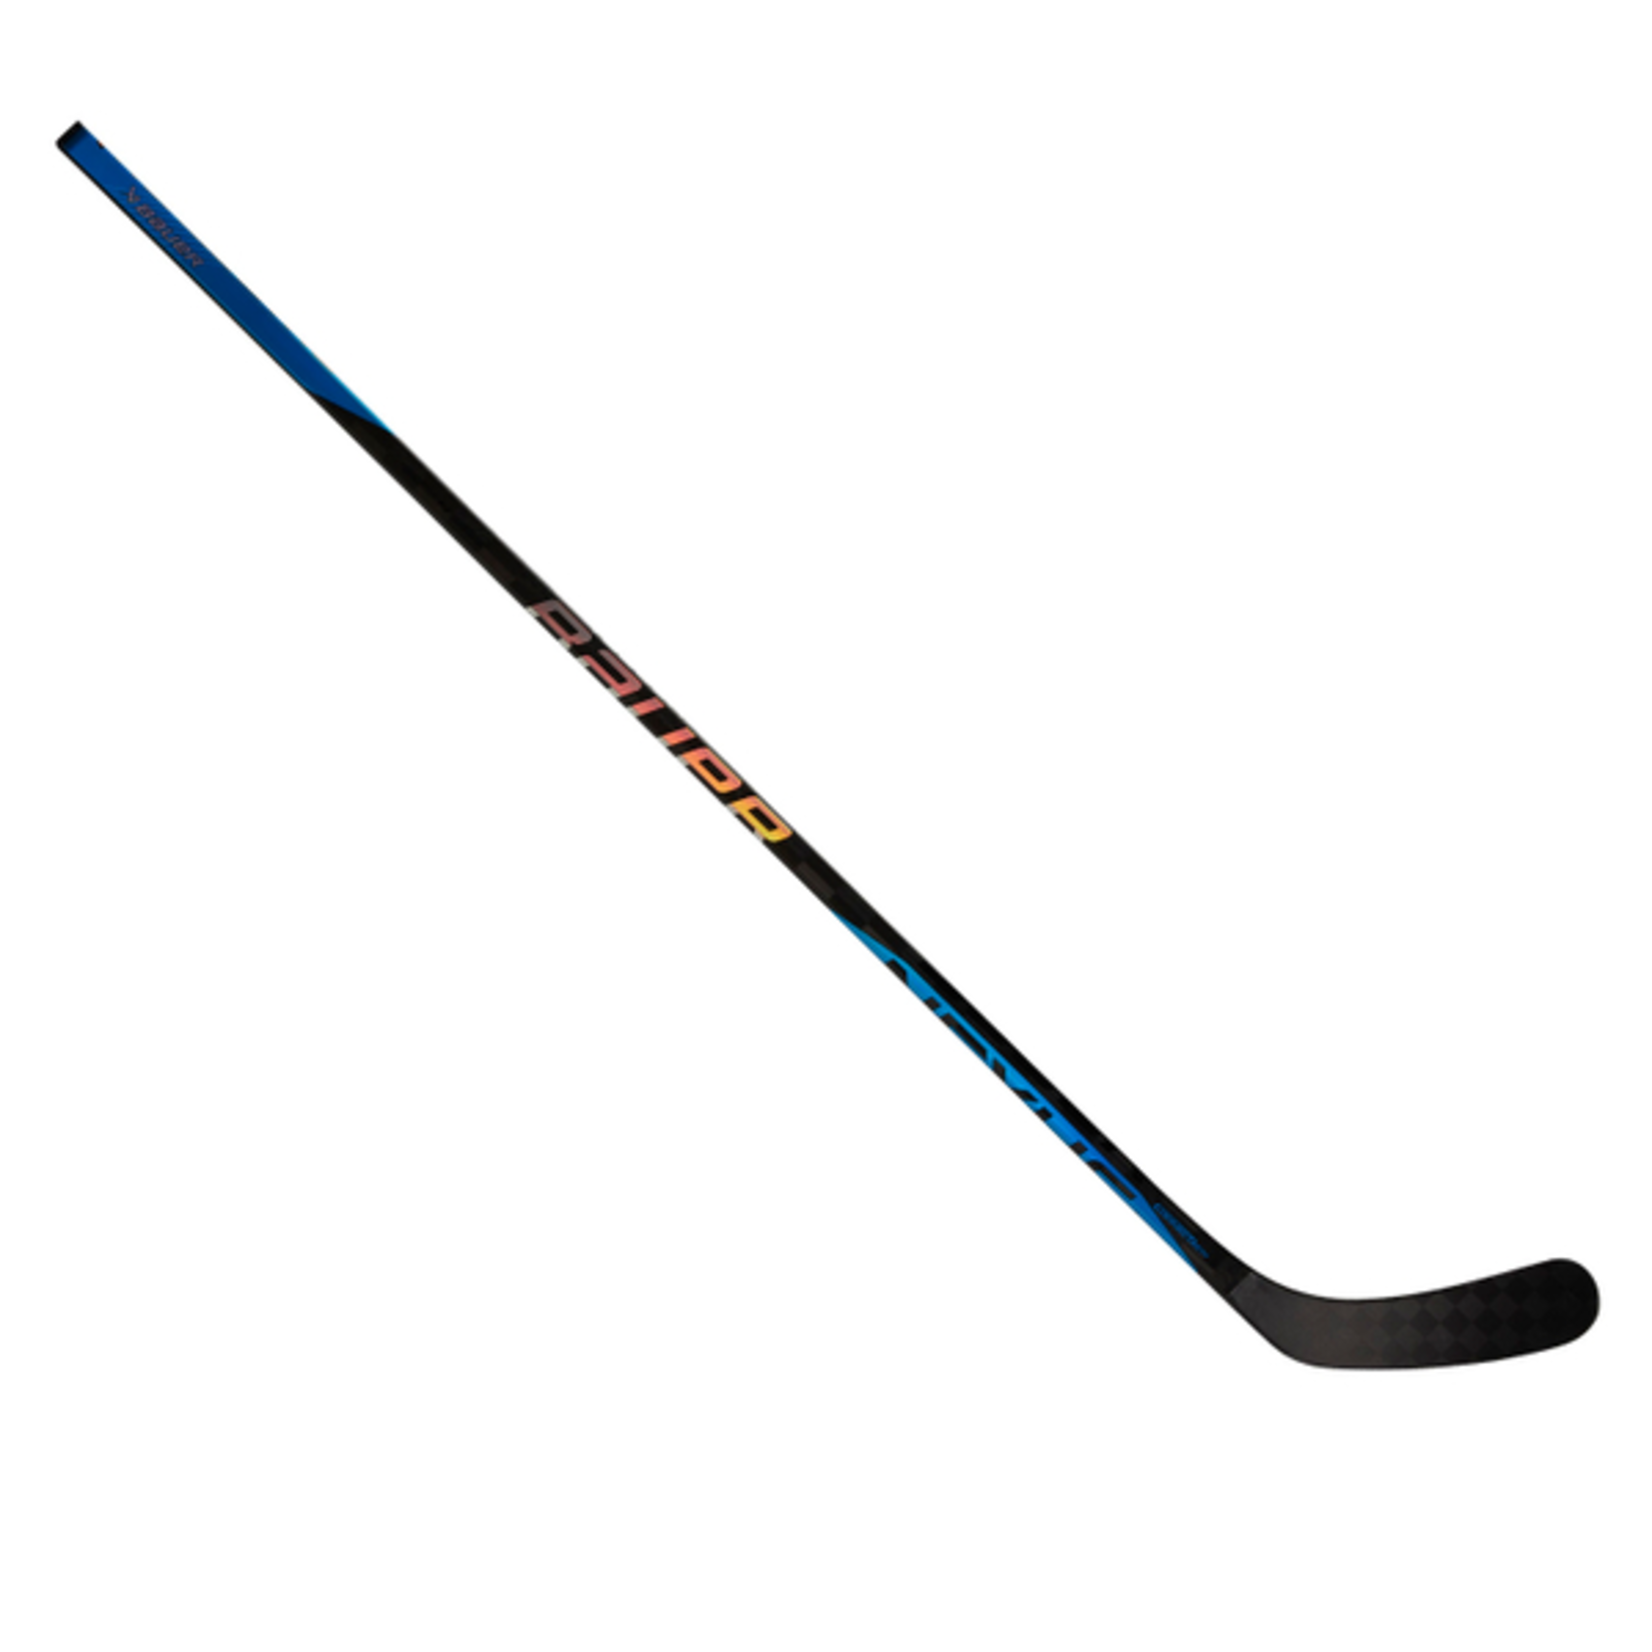 Bauer Bauer Hockey Stick, Nexus Sync Grip, Senior